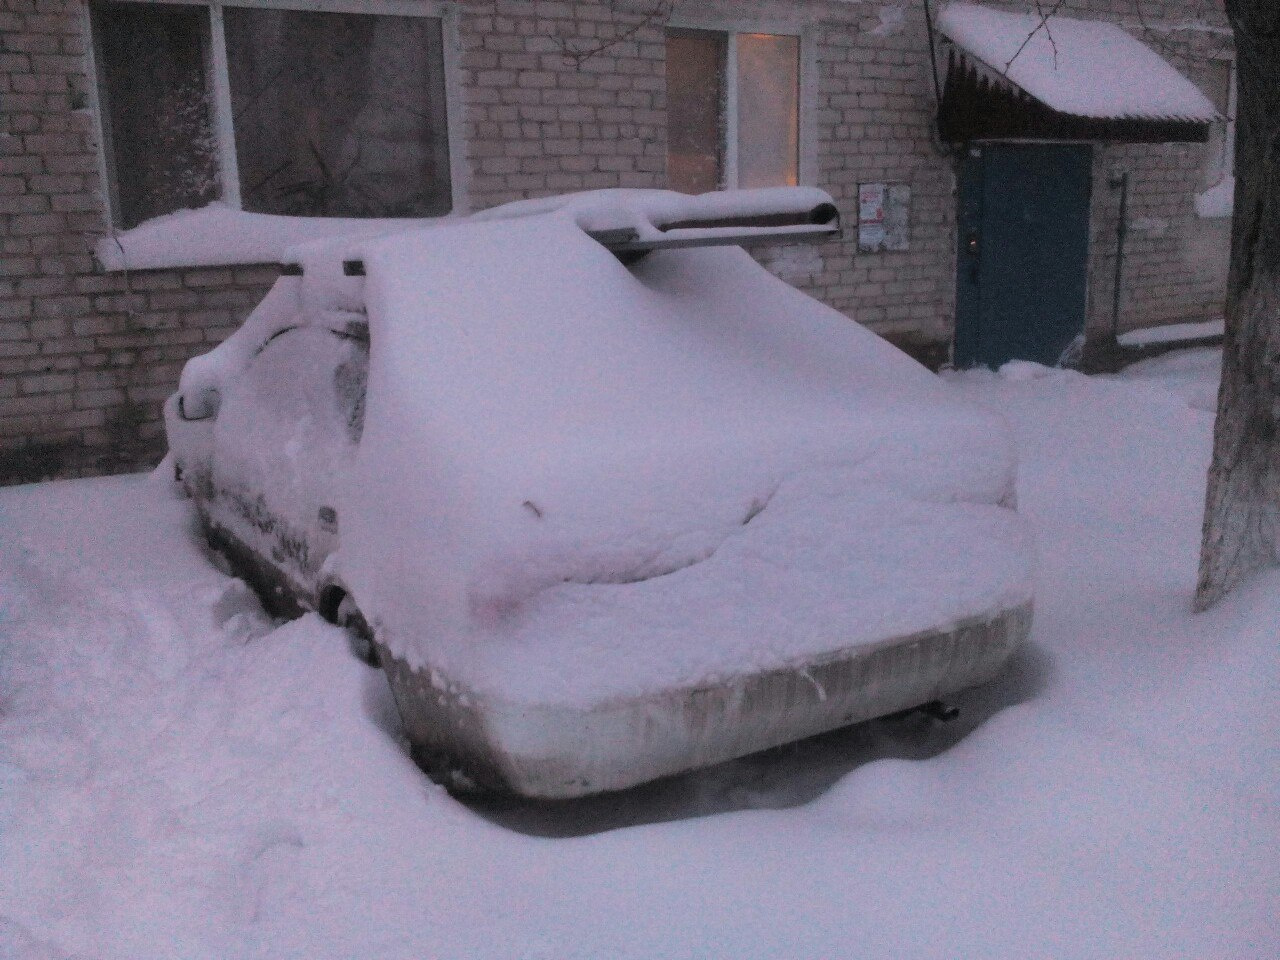 Ох, владельцу машины придется потрудиться, чтобы очистить её от снега